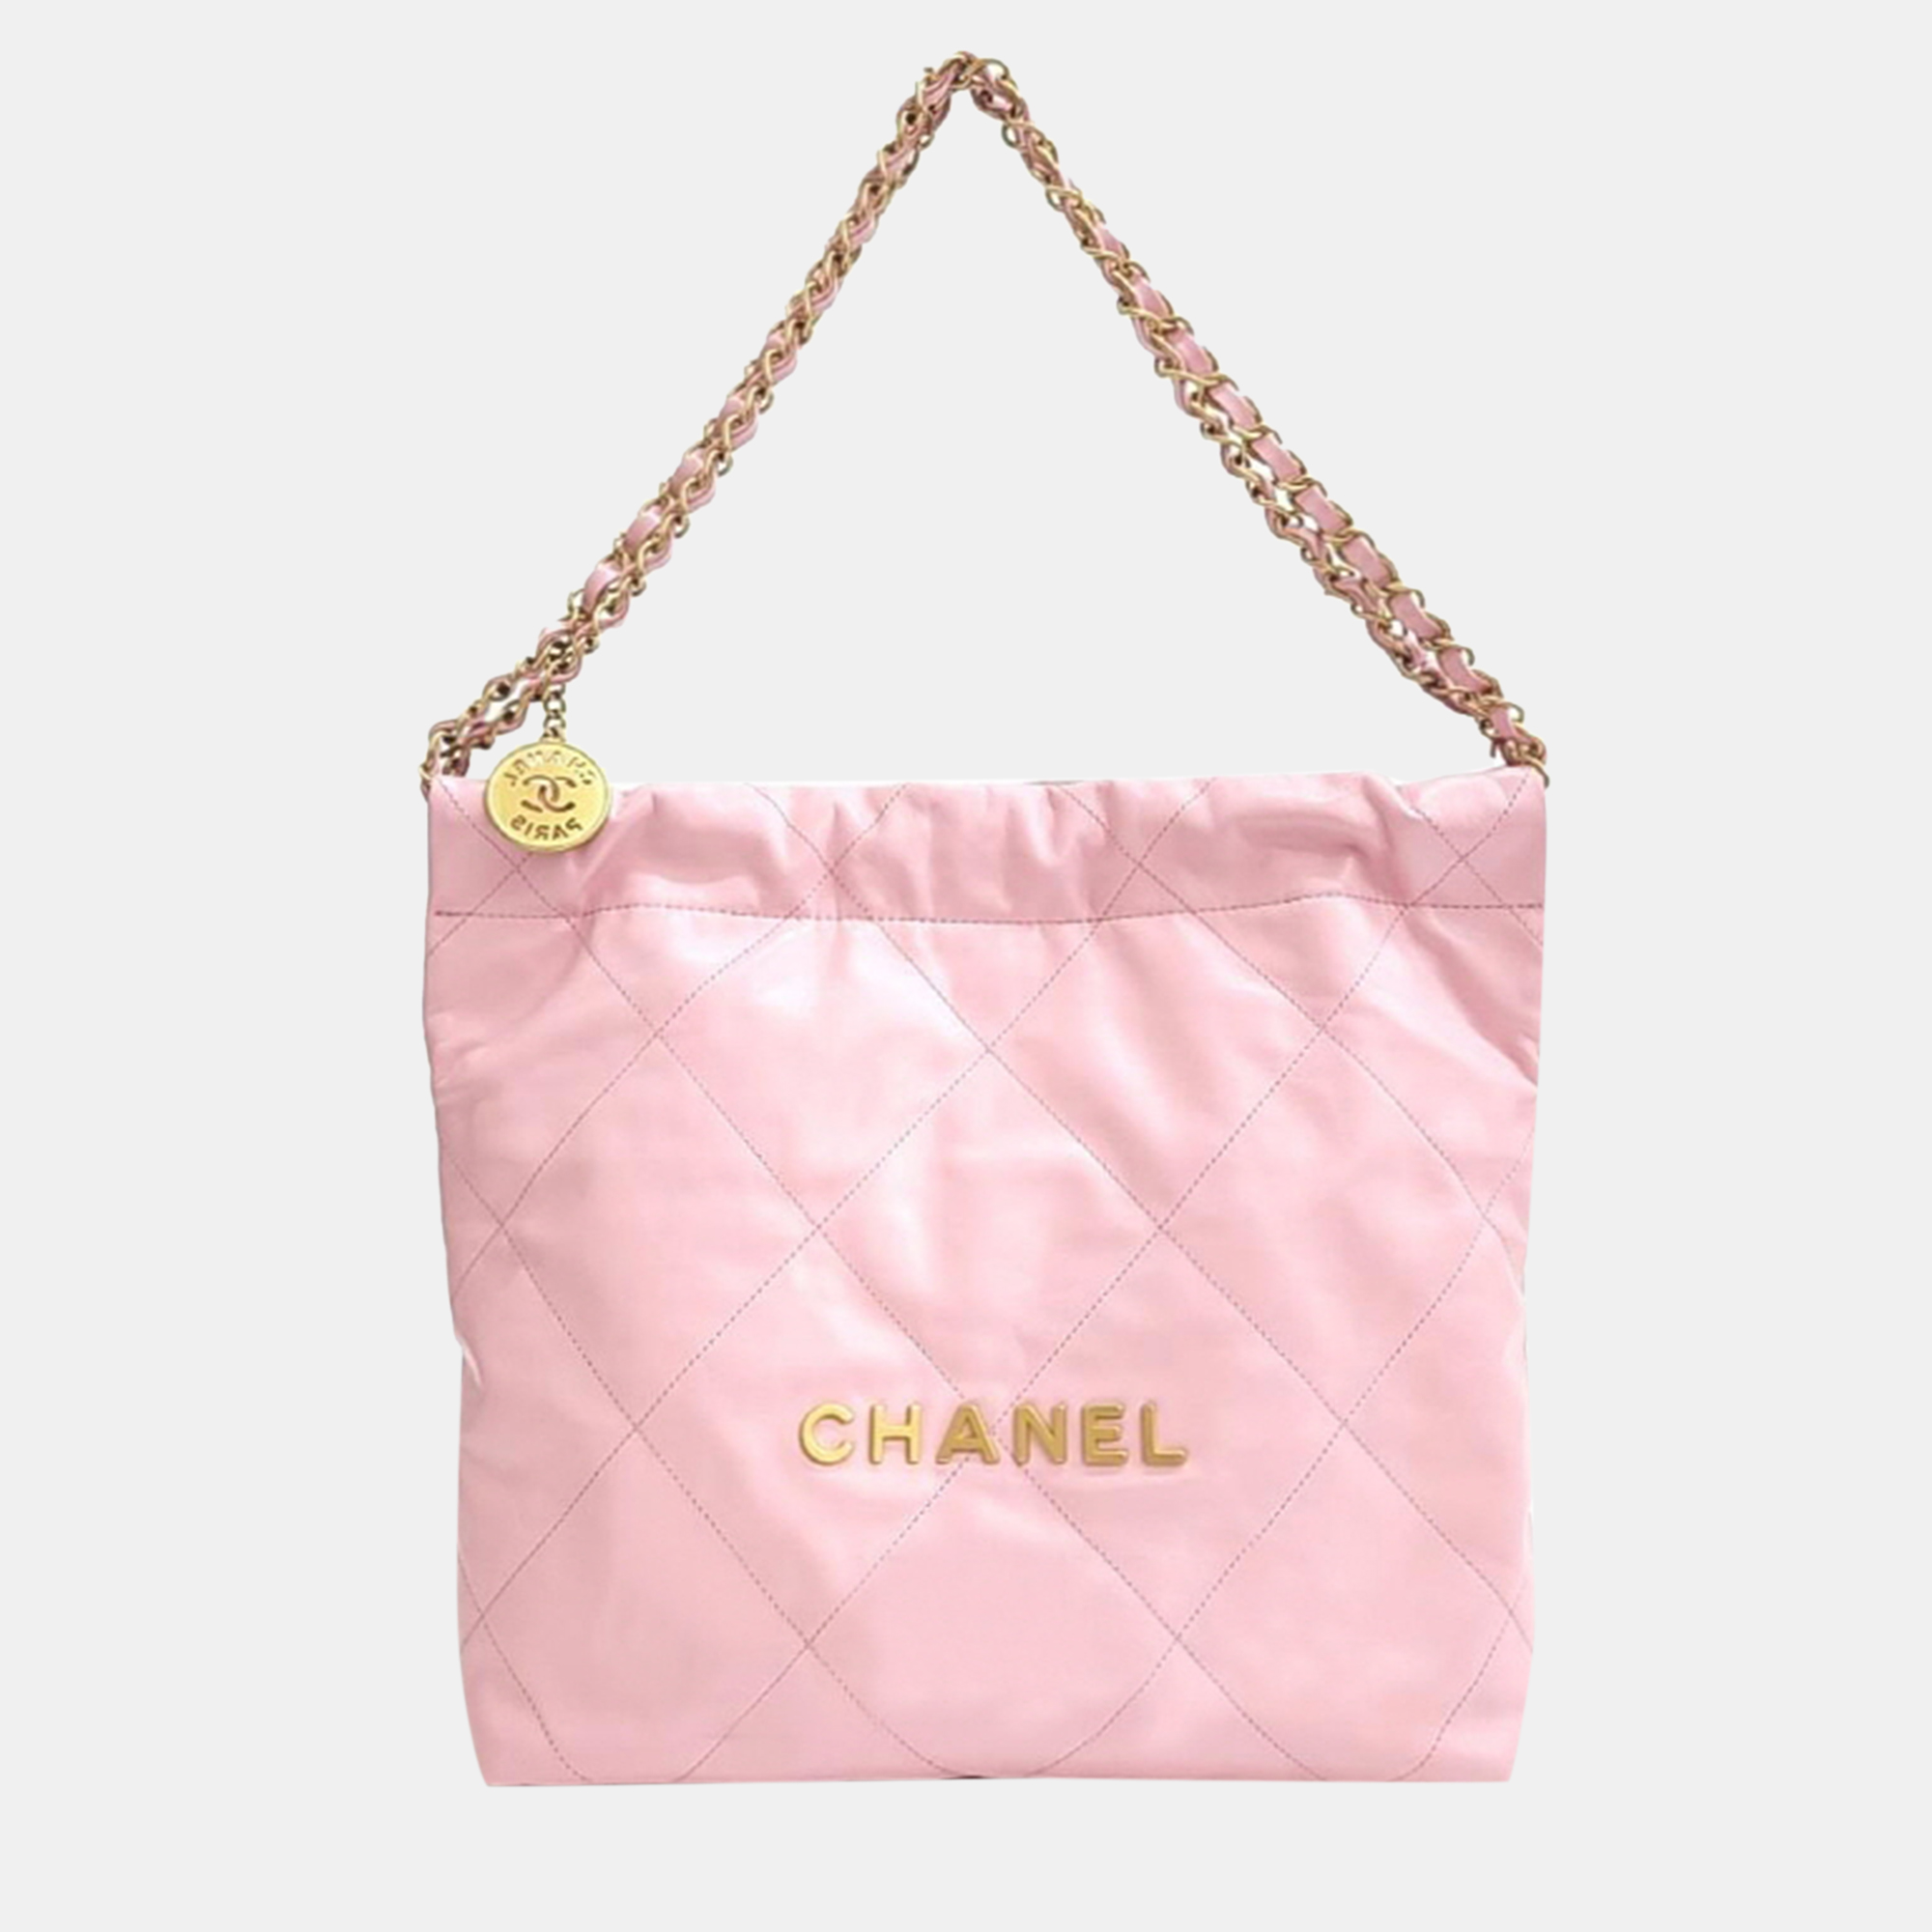 Chanel 22 Bag Small